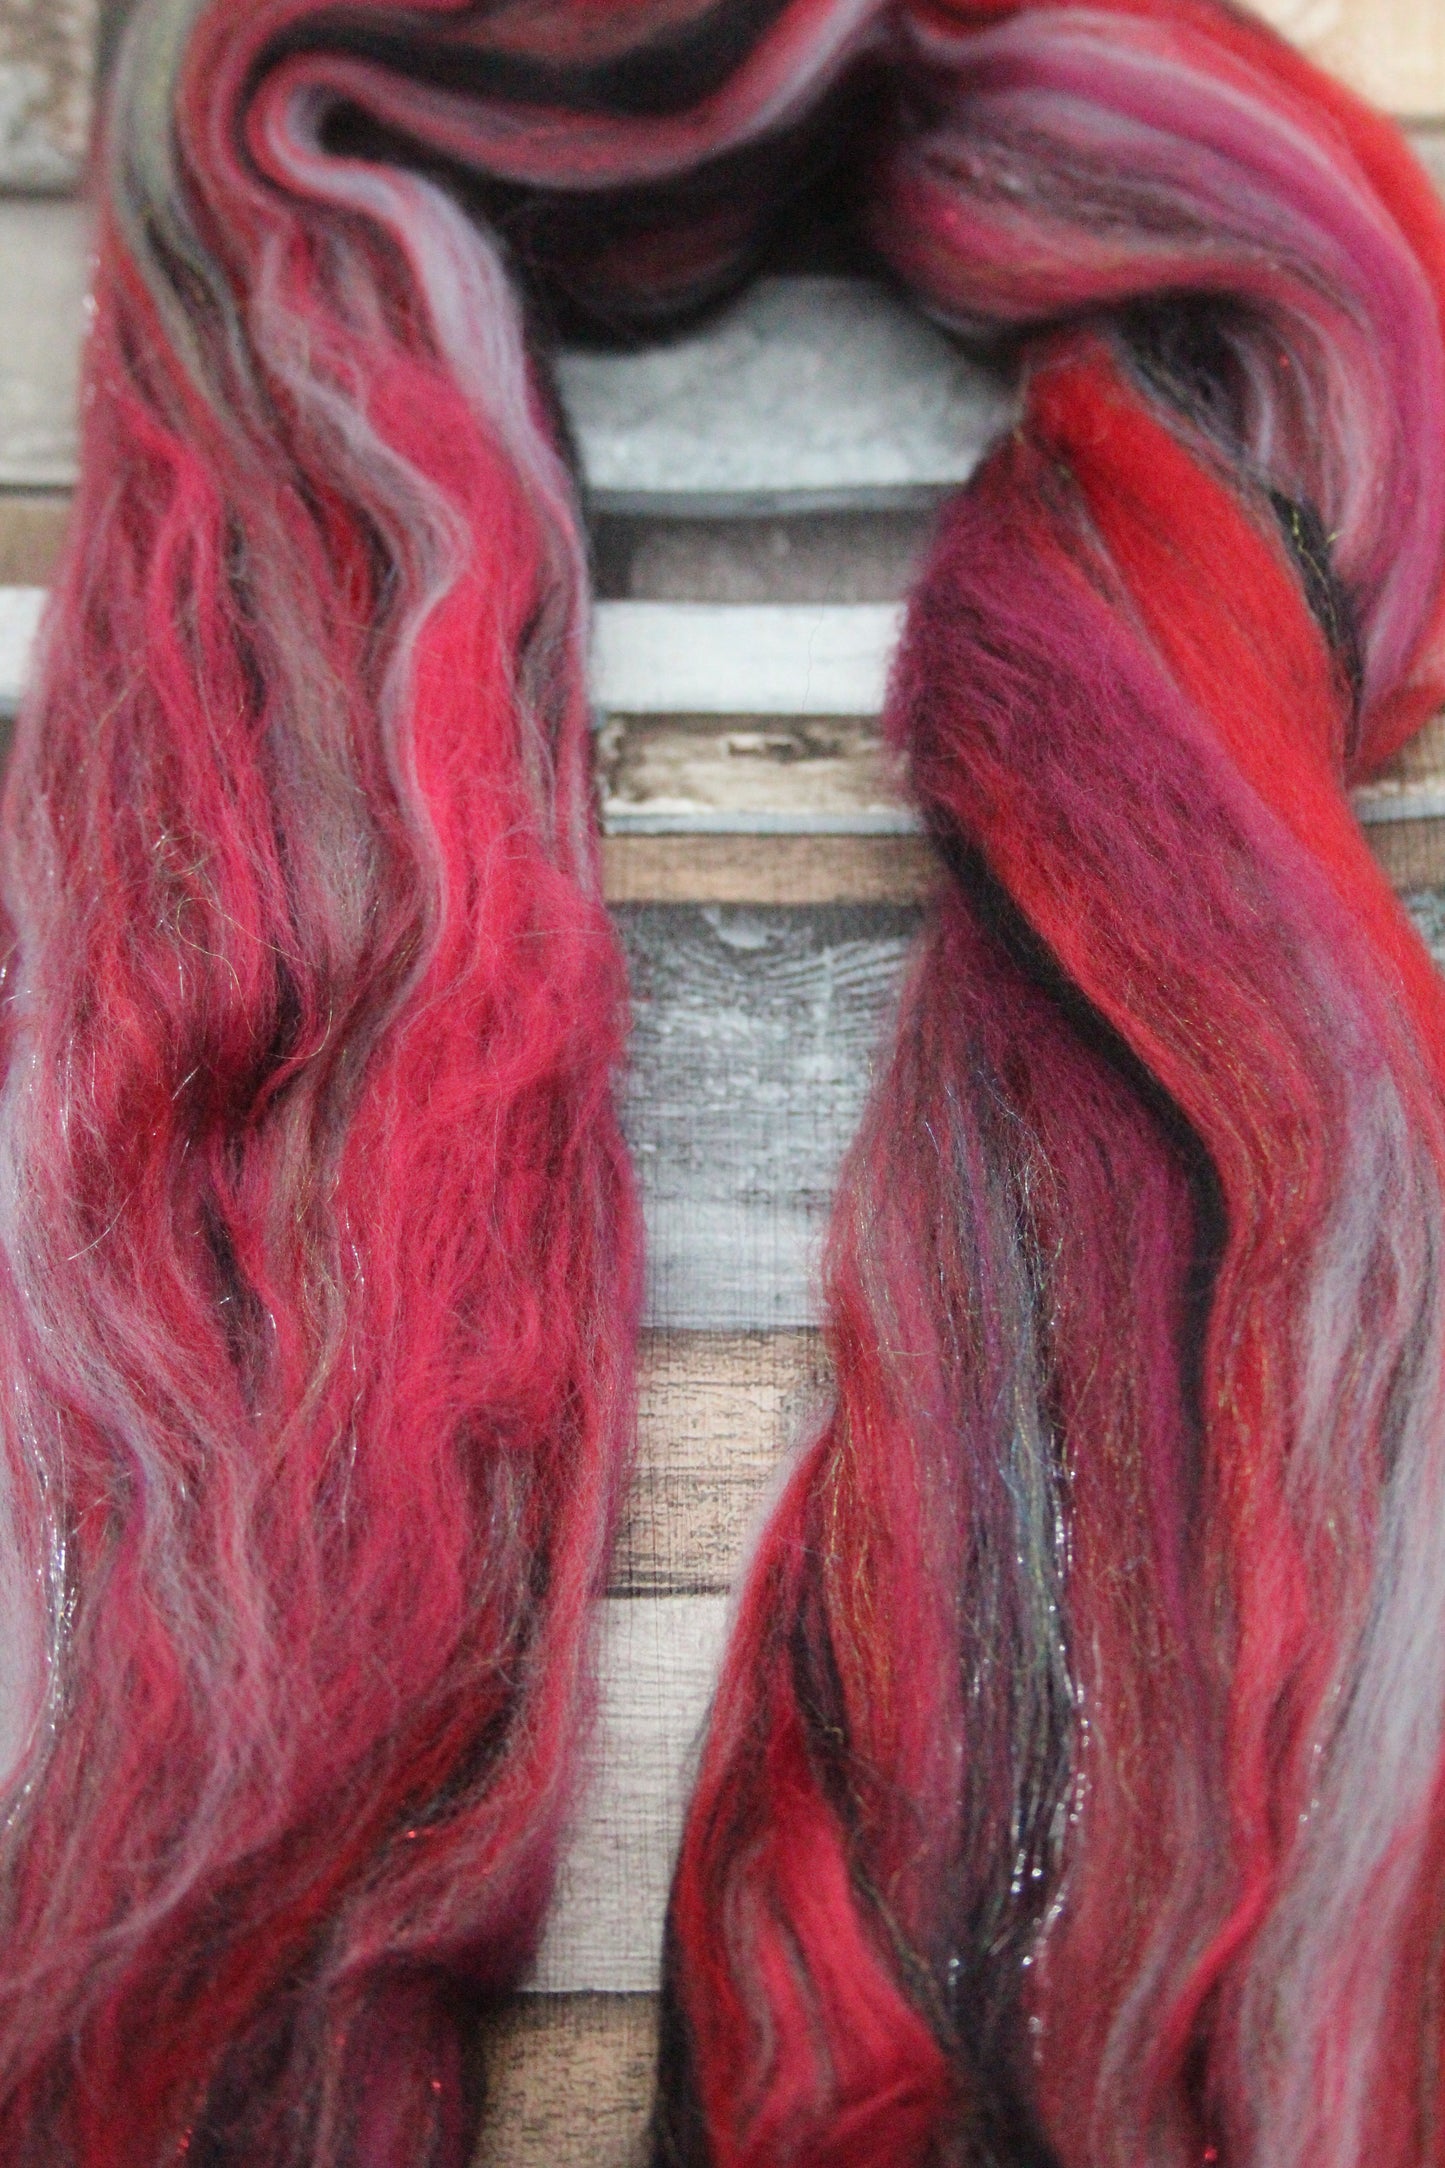 Merino Wool Blend - Red Grey Black - 22 grams / 0.7 oz  - Fibre for felting, weaving or spinning